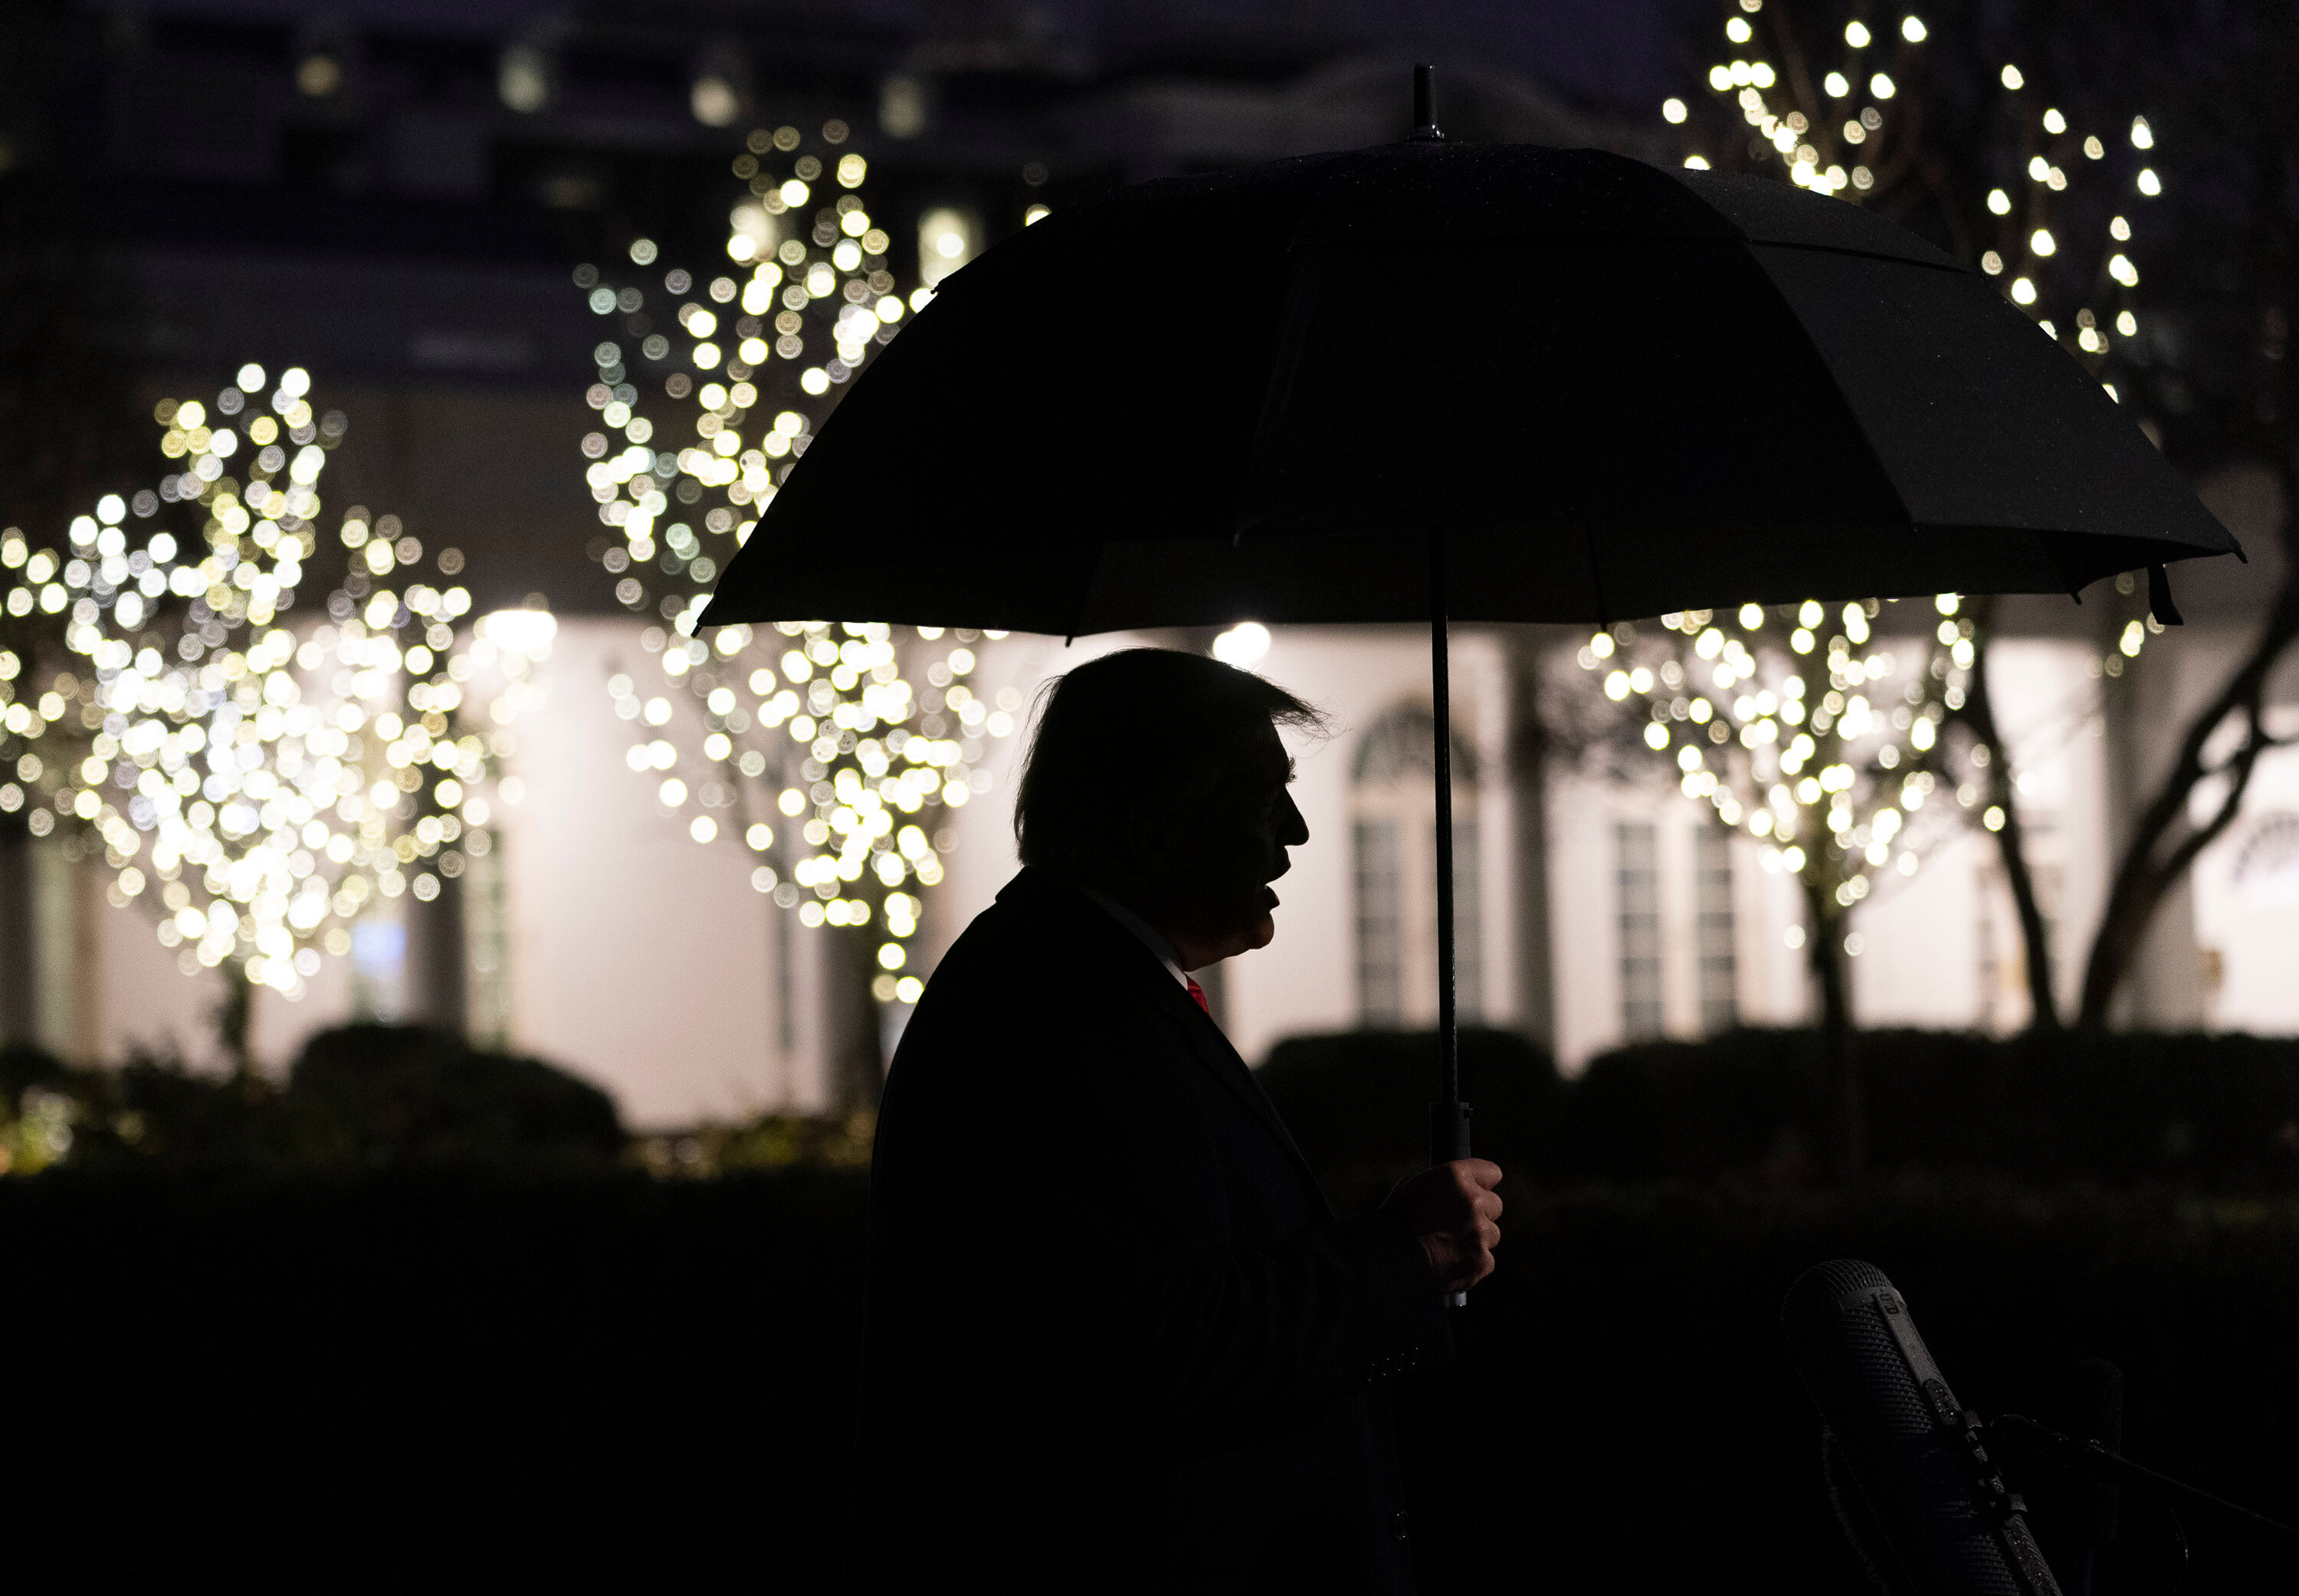 President Donald Trump staat journalisten te woord in de tuin van het Witte Huis. © The White House/Flickr